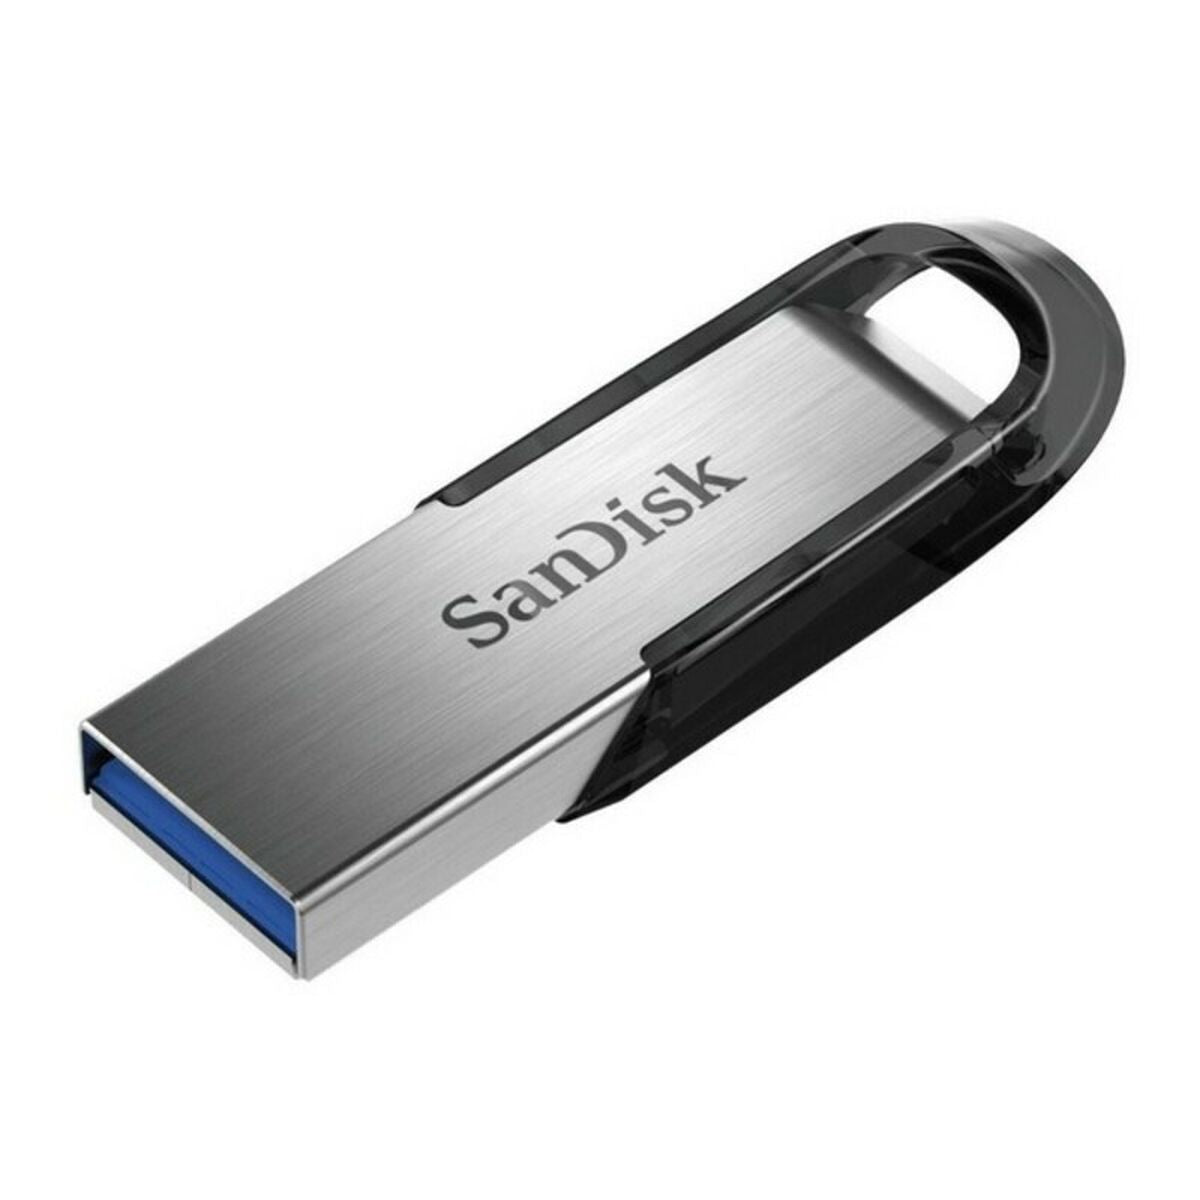 SanDisk SDCZ73-0G46 USB 3.0 Pendrive